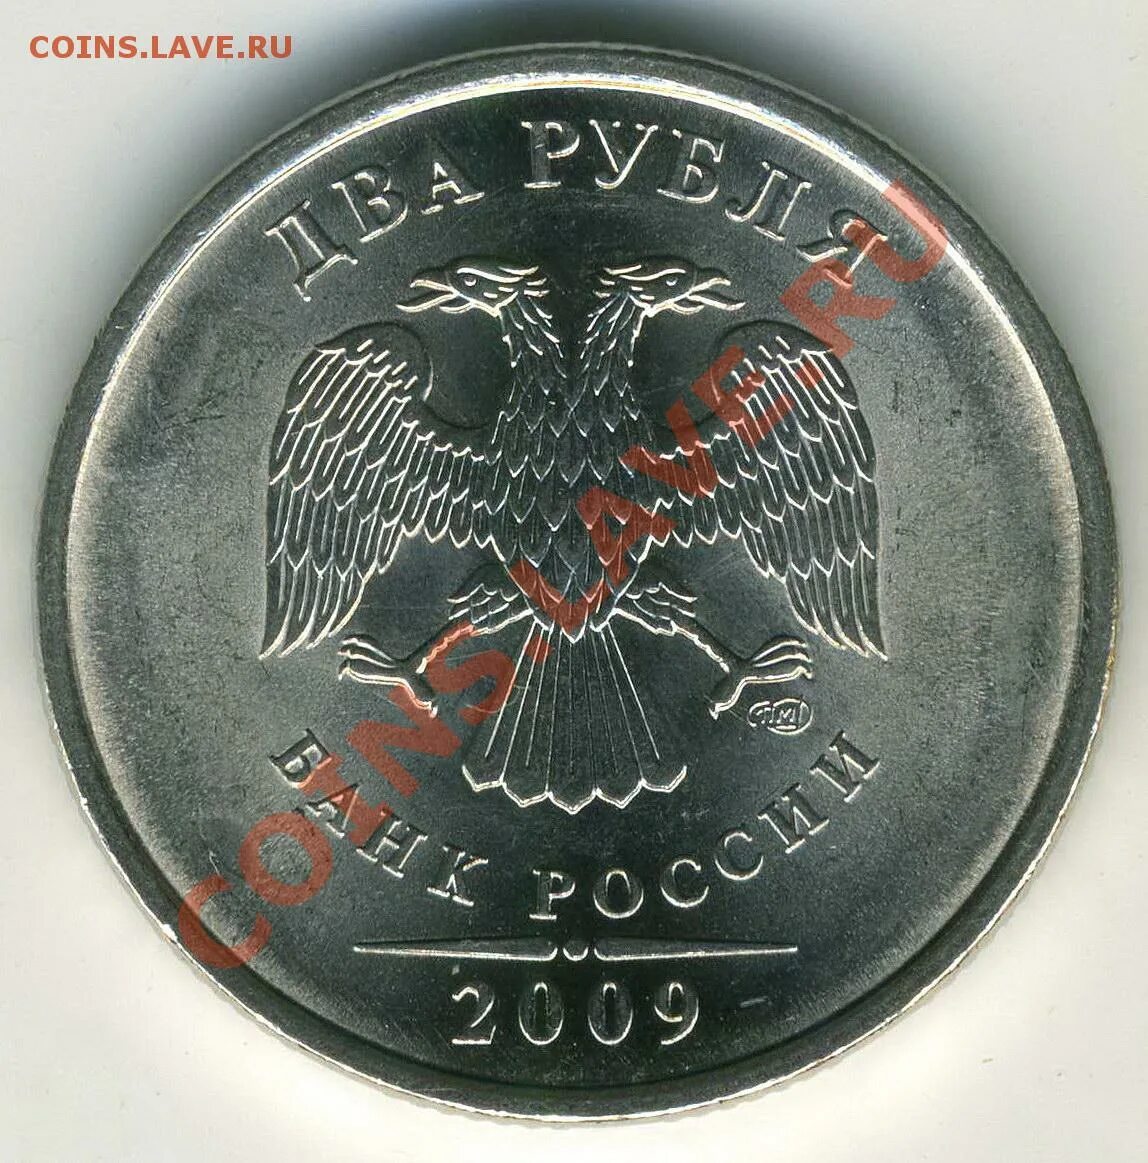 350 российских рублей. 5 Р 2009.